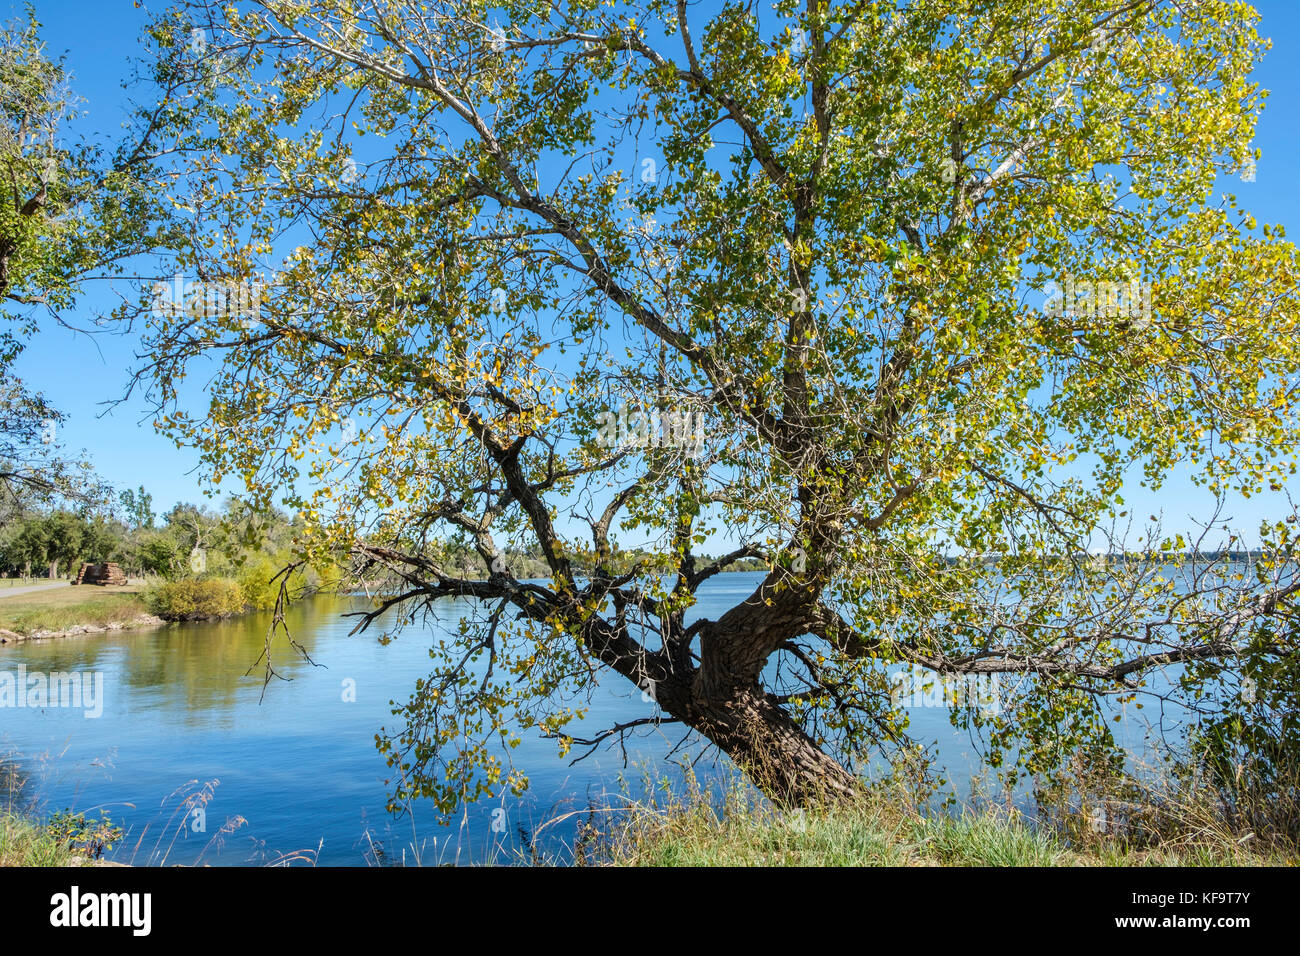 Grandes feuilles deltoïdes à maturité au début de l'automne d'arbres poussant sur les rives d'un lac dans la région de New York, USA. Banque D'Images